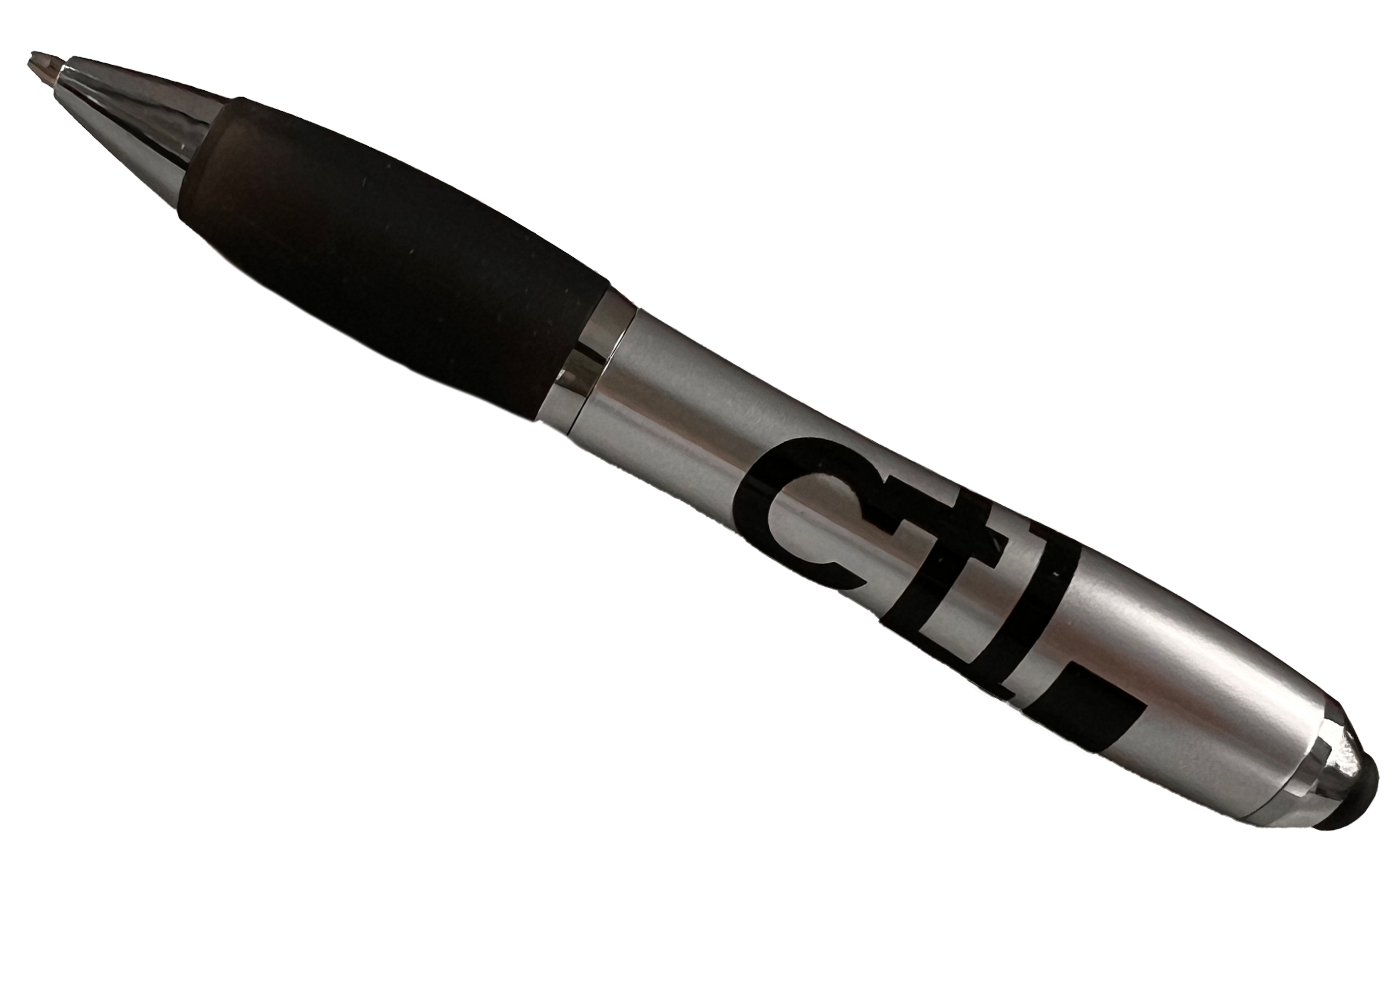 CTL Ballpoint Pen